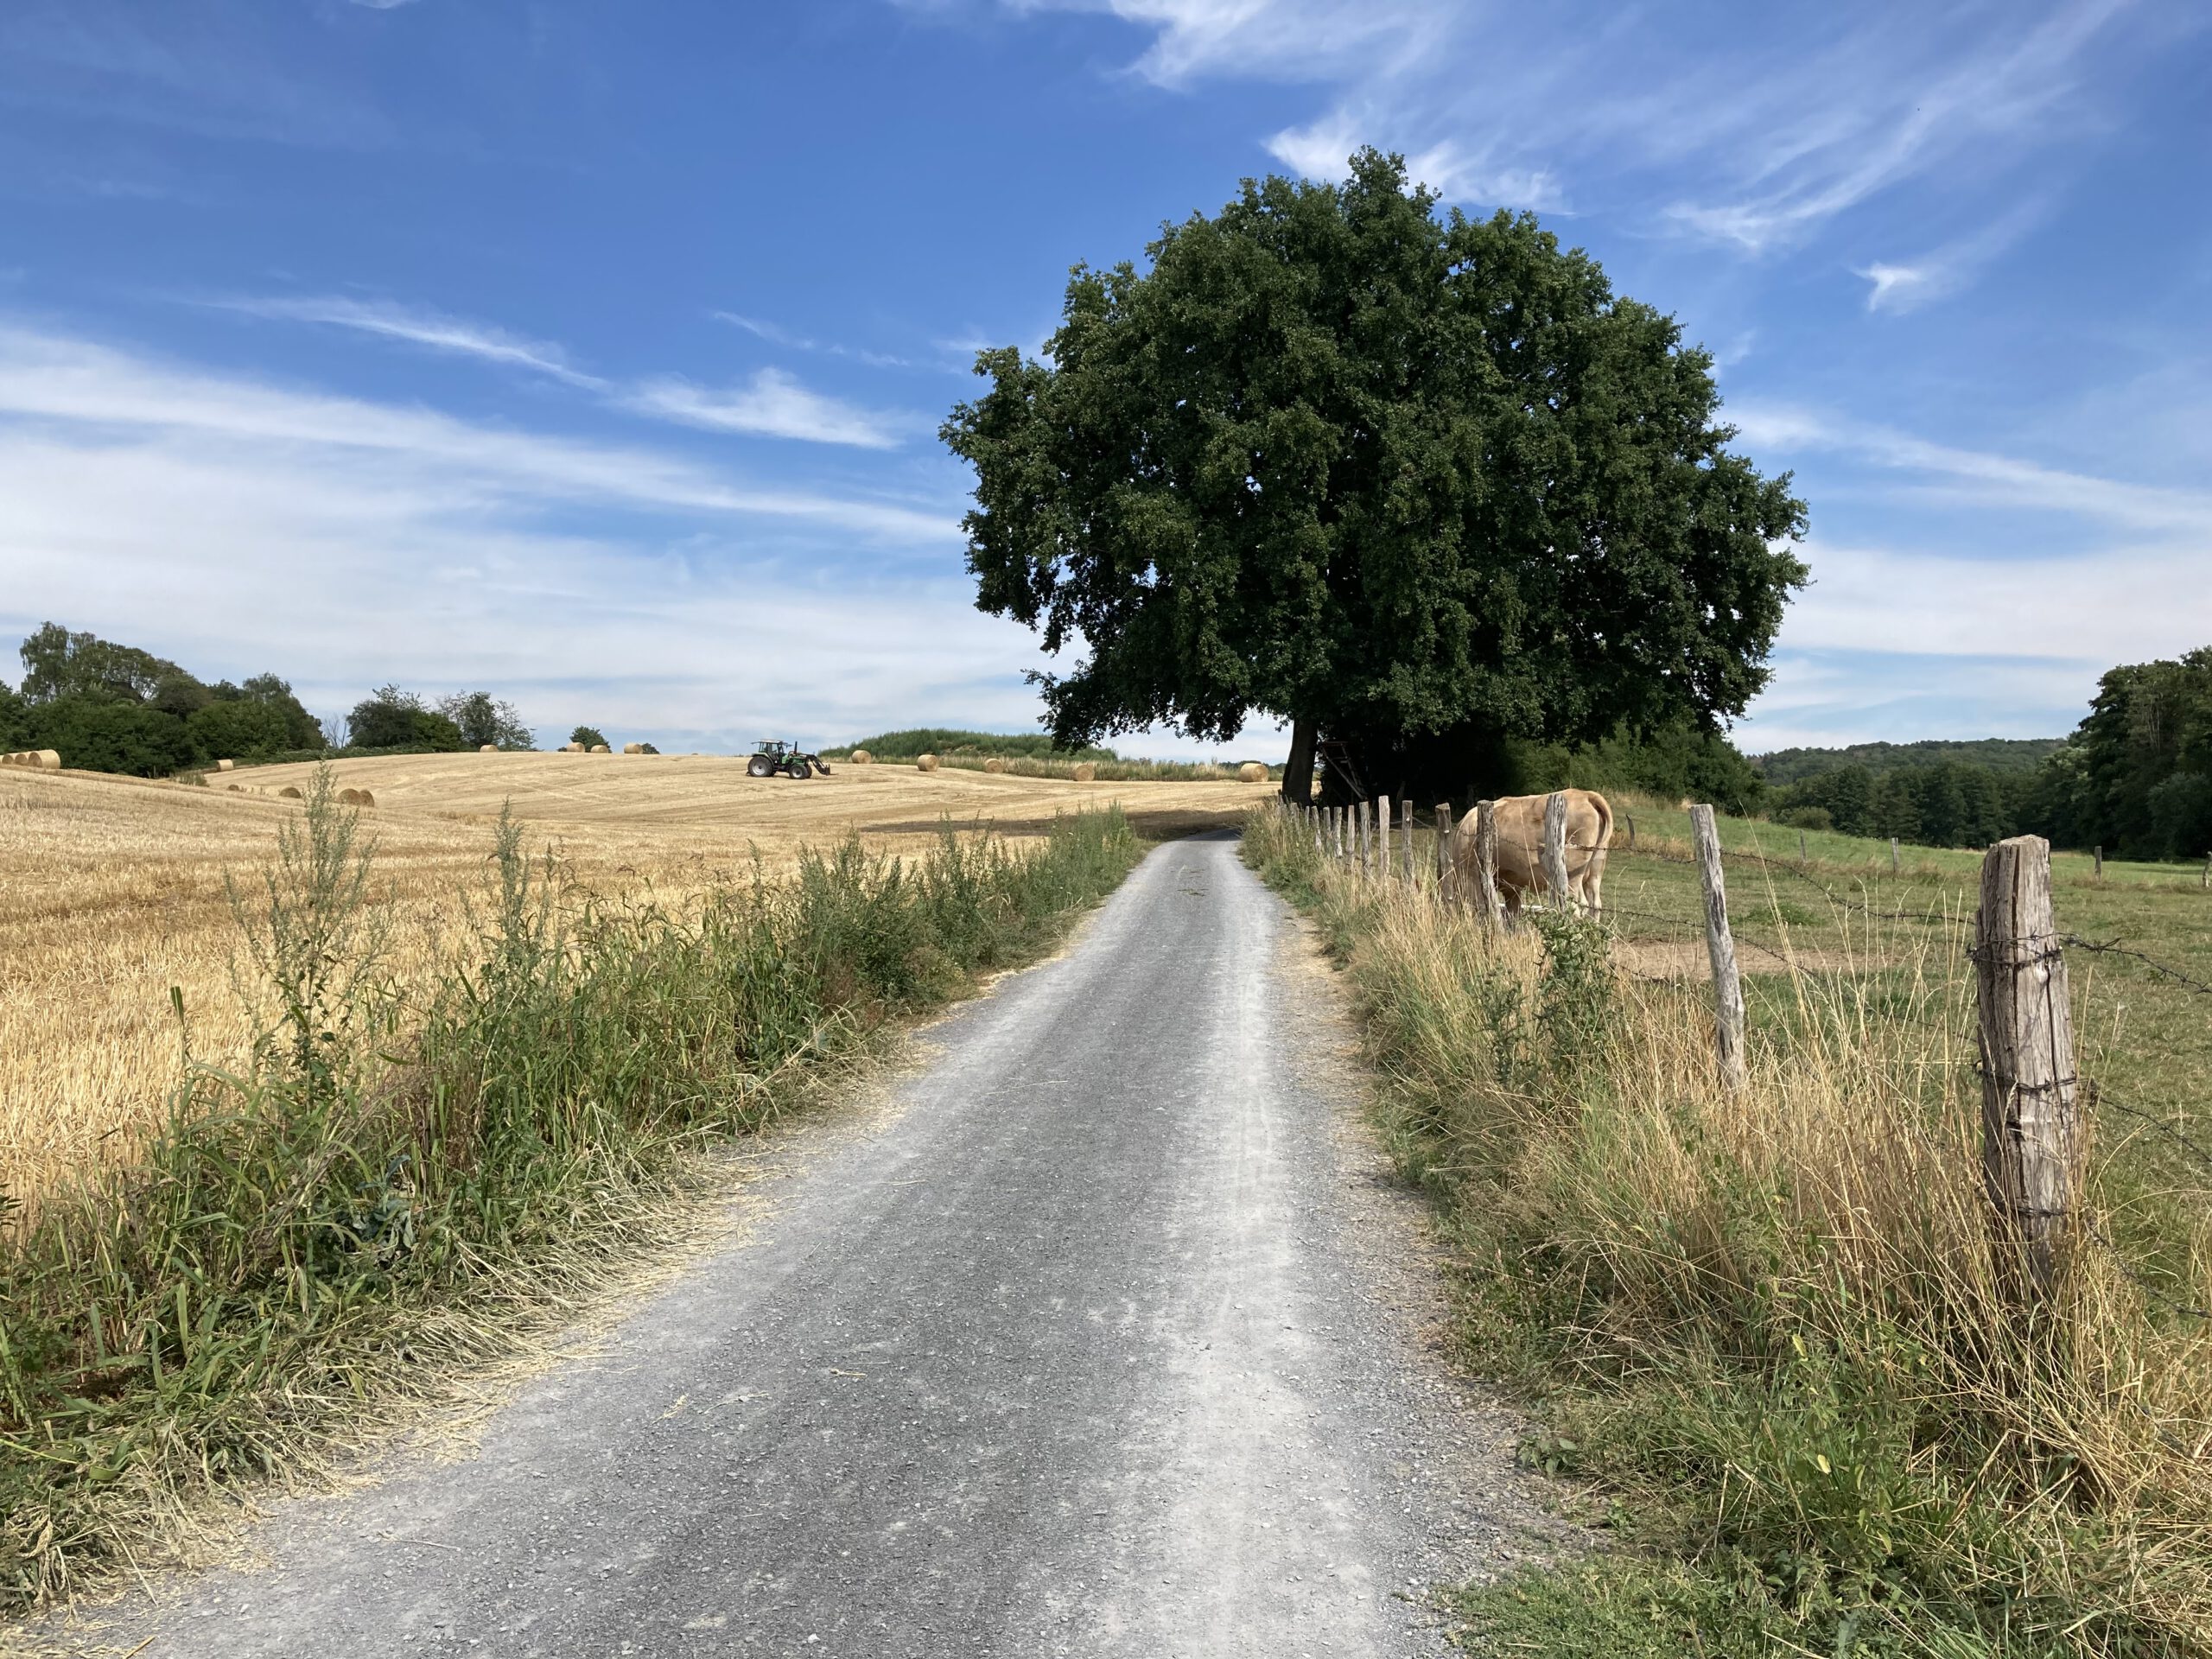 EIn Weg führt zwischen Weiden zu einem großen Baum.